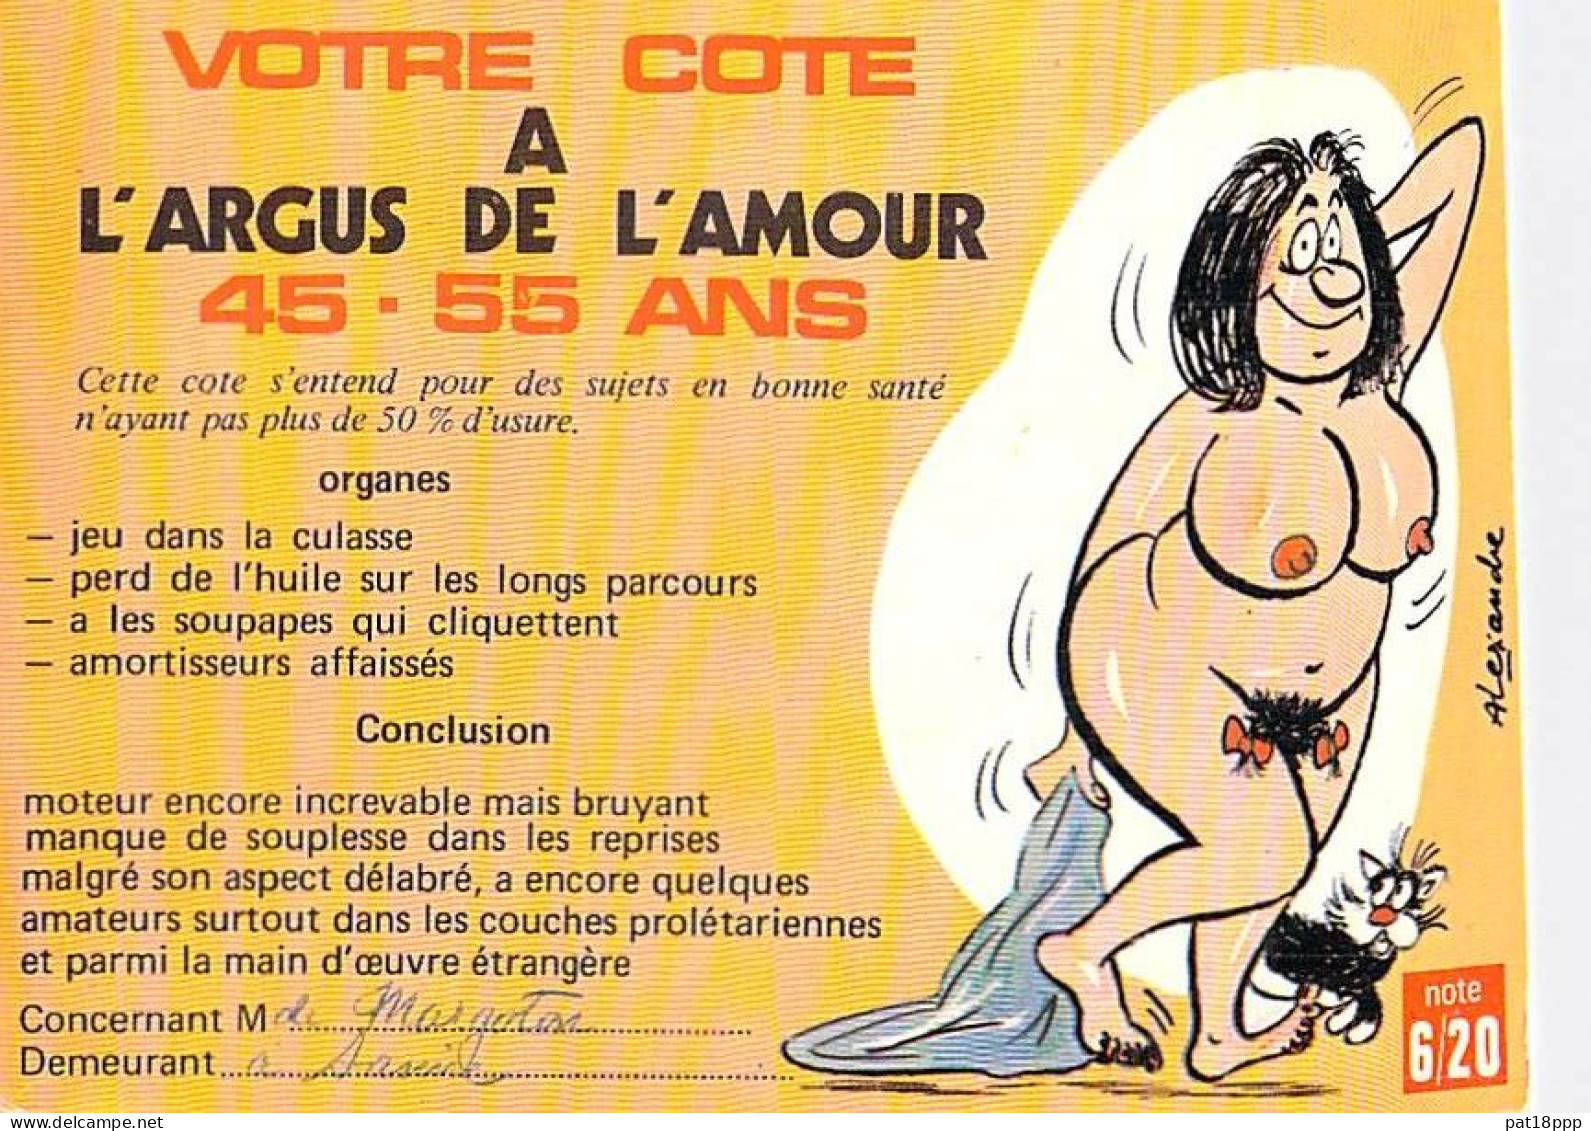 Lot de 15 cartes HUMOUR Humor ( Francophone Français ) 9 CPA et 6 CPSM grand format - Prix départ : 0.25 € / carte !